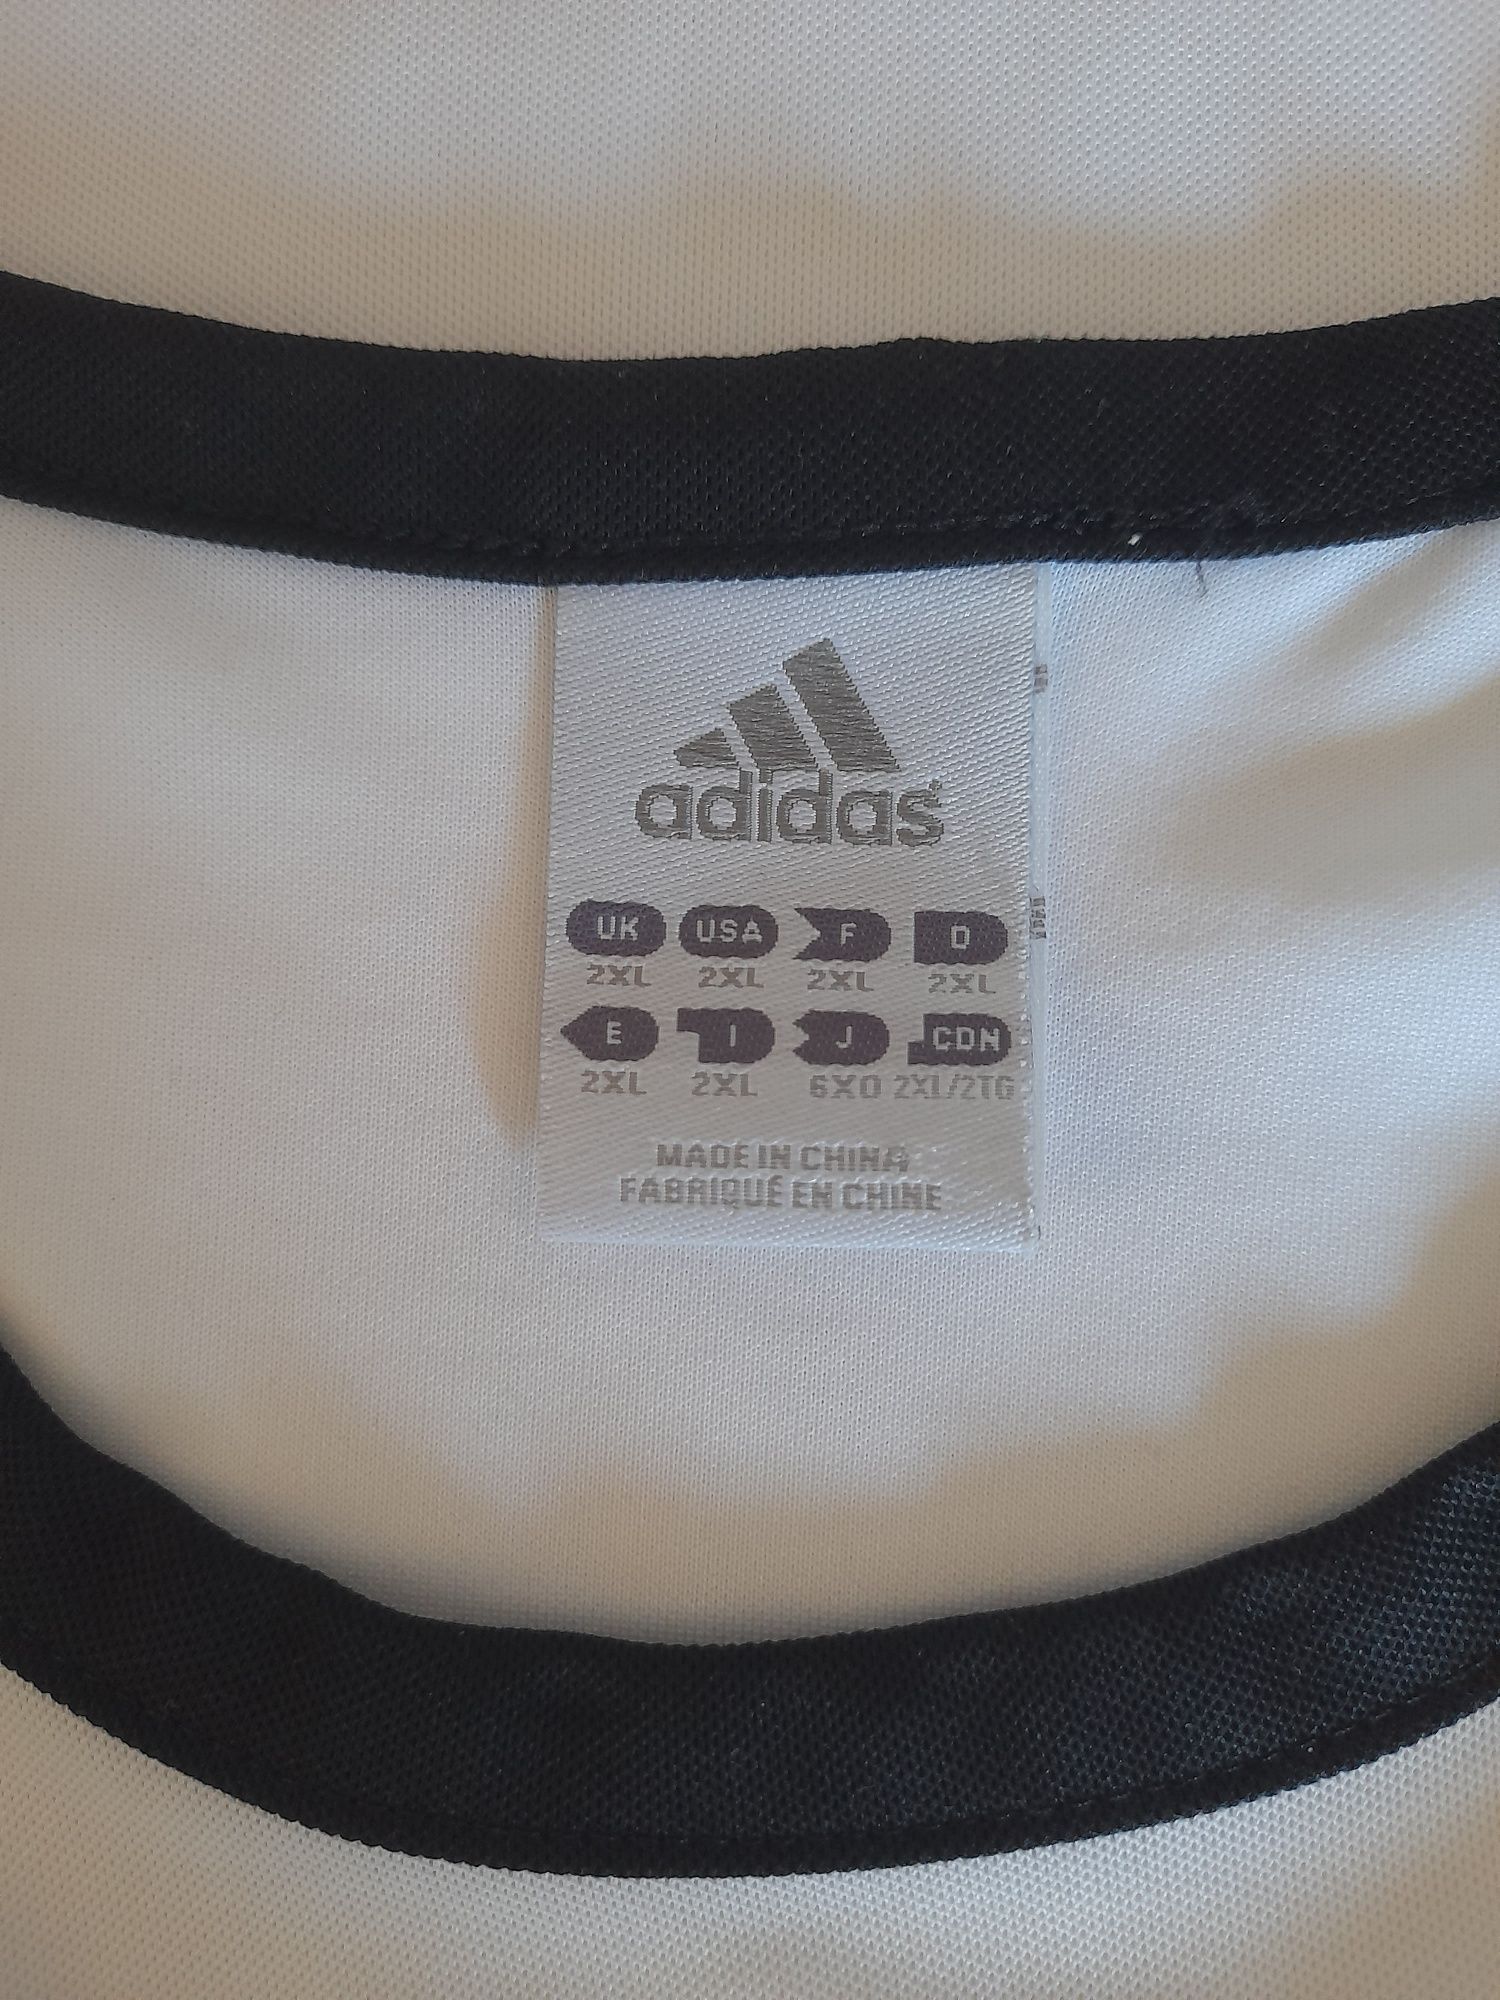 Оригинал Adidas футбольная джерси Германия 2010- 2011  идеал, XL, 2XL